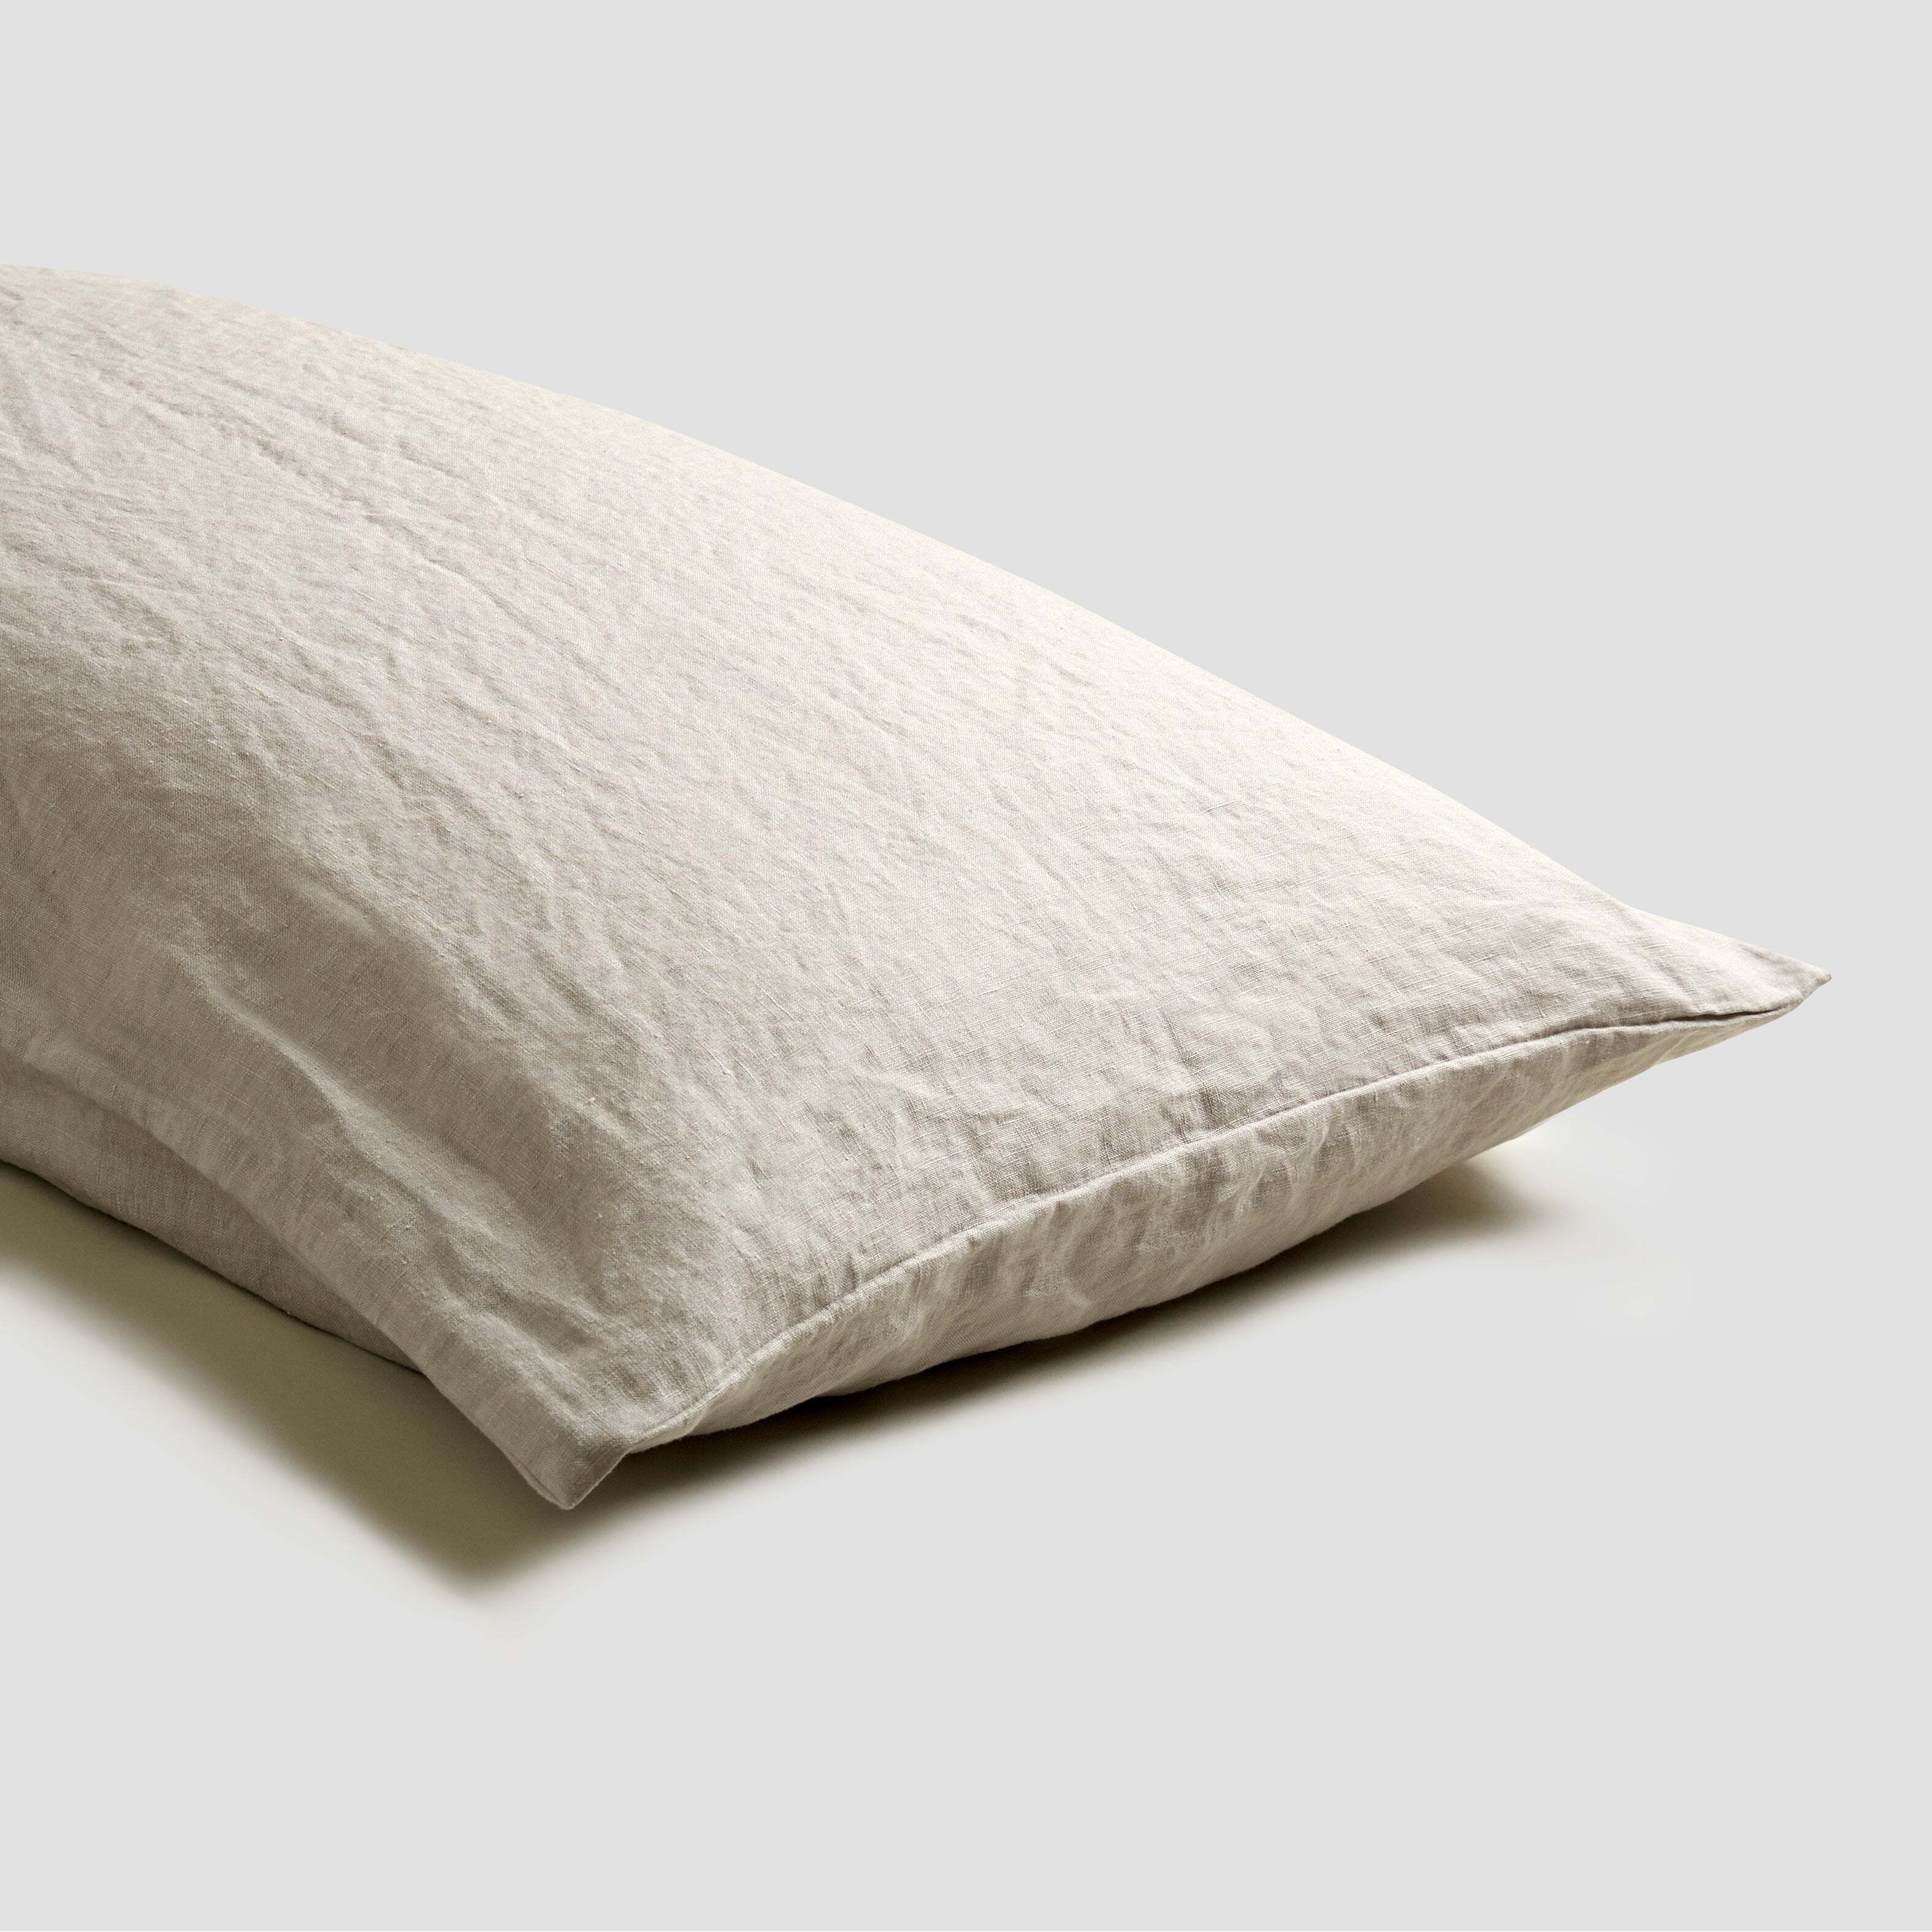 Piglet Oatmeal Linen Pillowcases (Pair) Size Standard